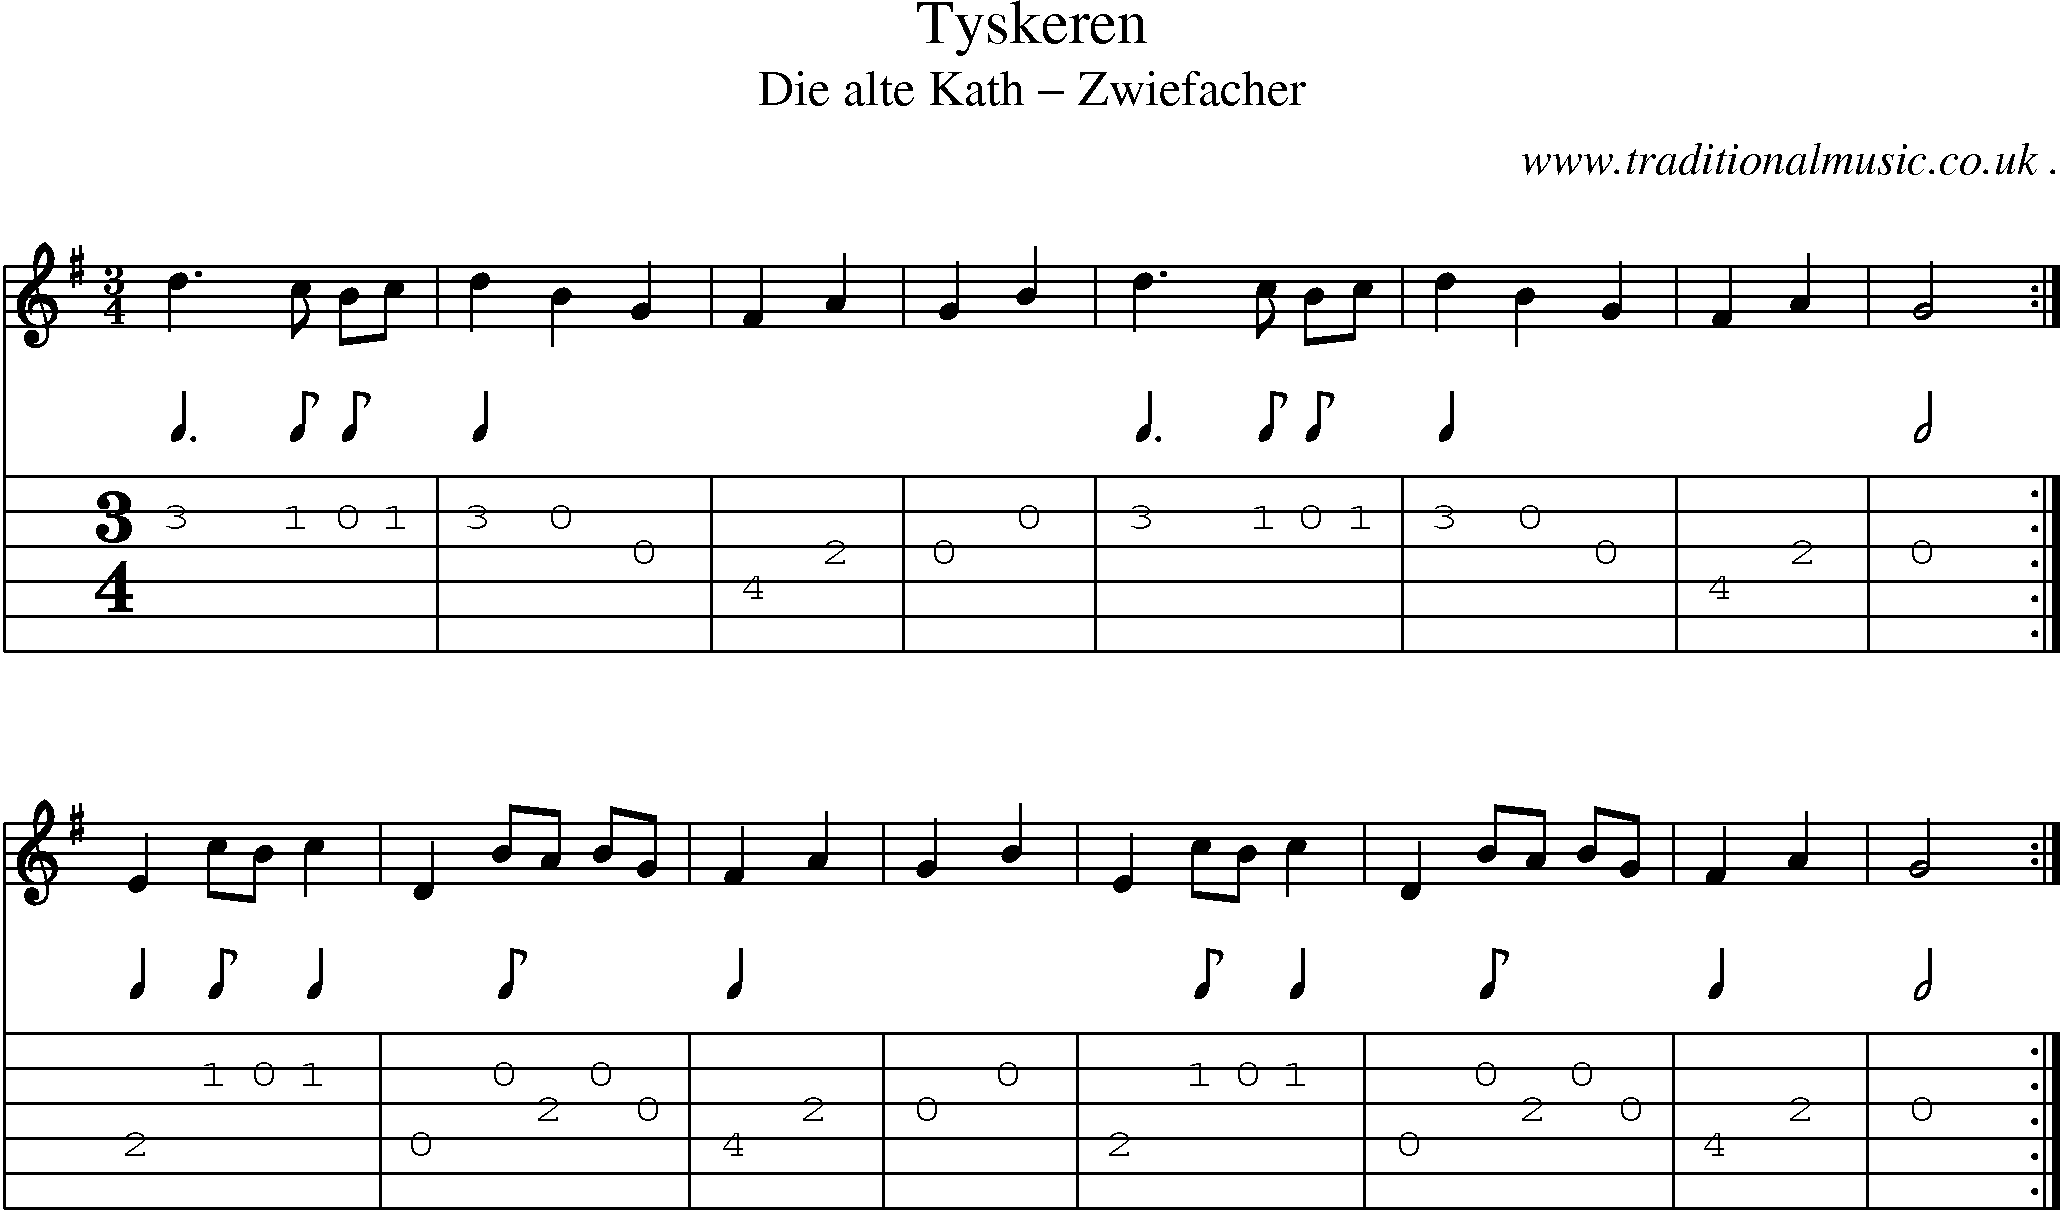 Sheet-Music and Guitar Tabs for Tyskeren